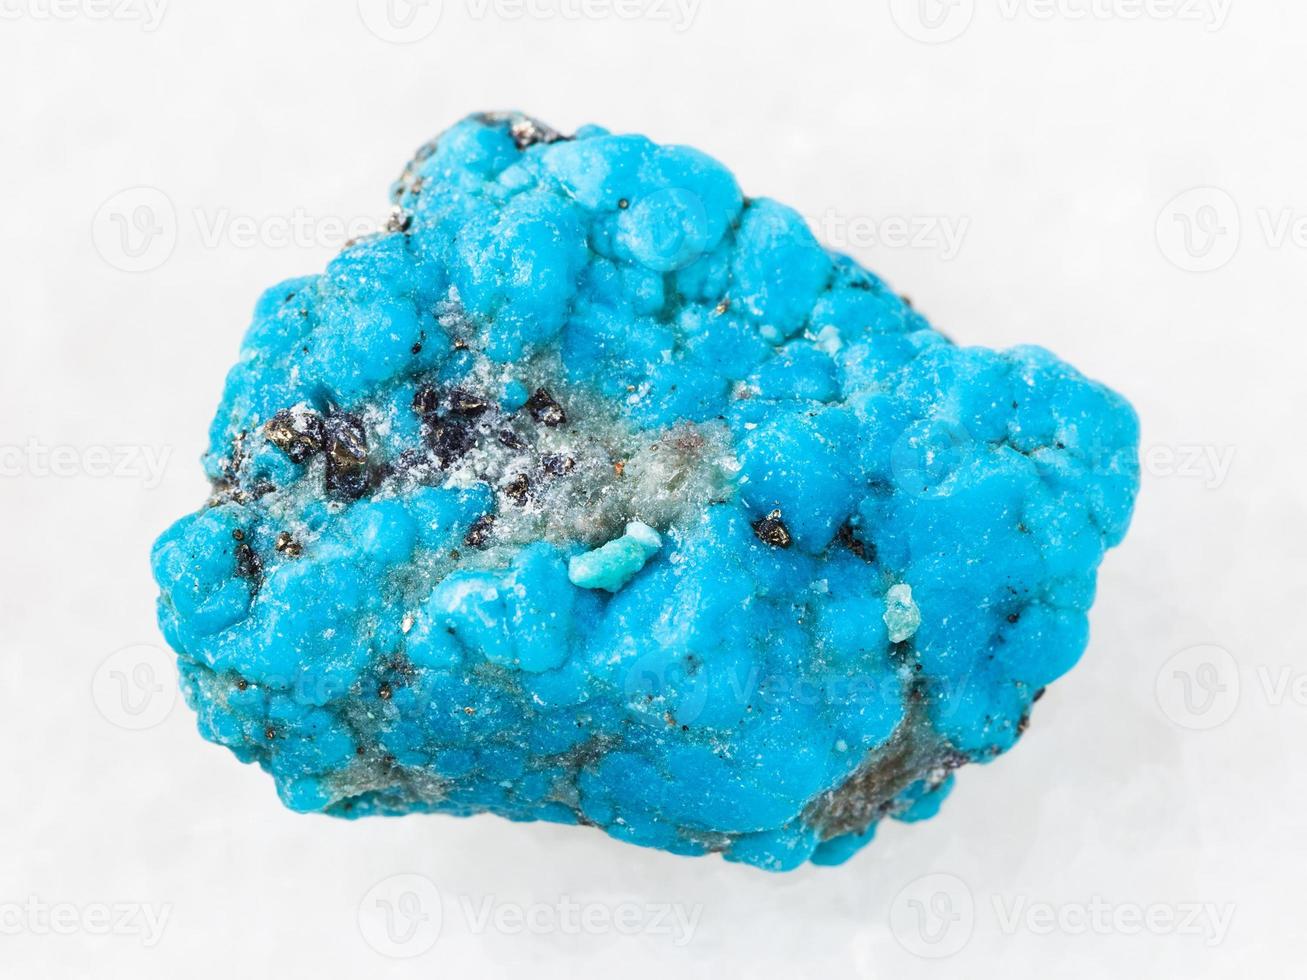 pedra preciosa turquesa azul crua em branco foto